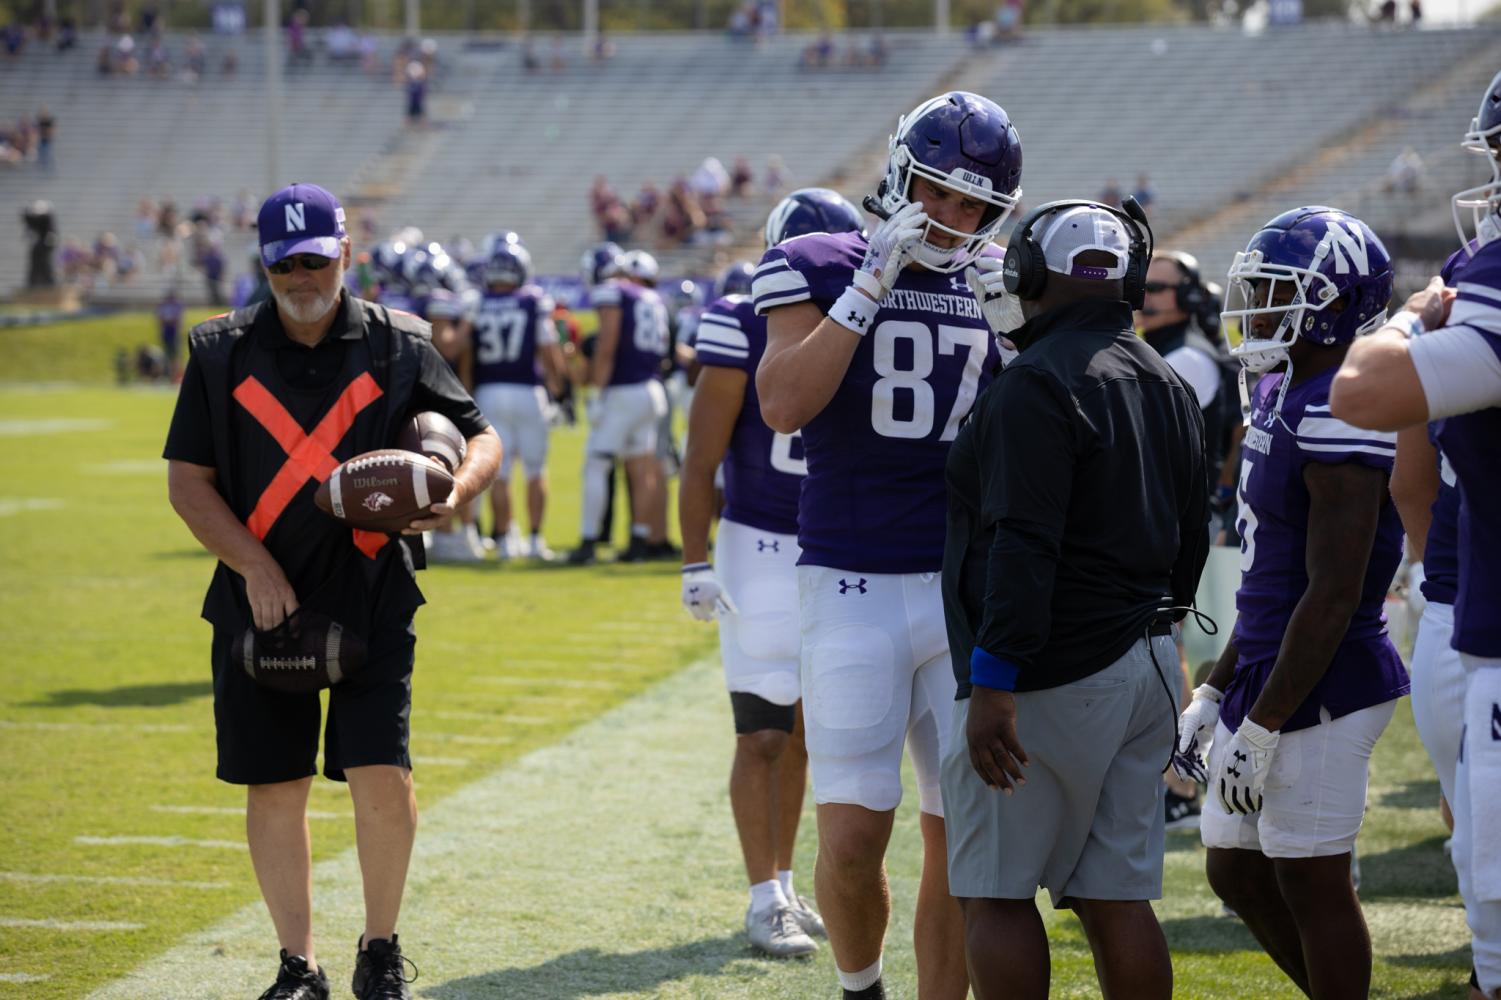 Player+in+purple+uniform+adjusts+helmet+on+sideline.